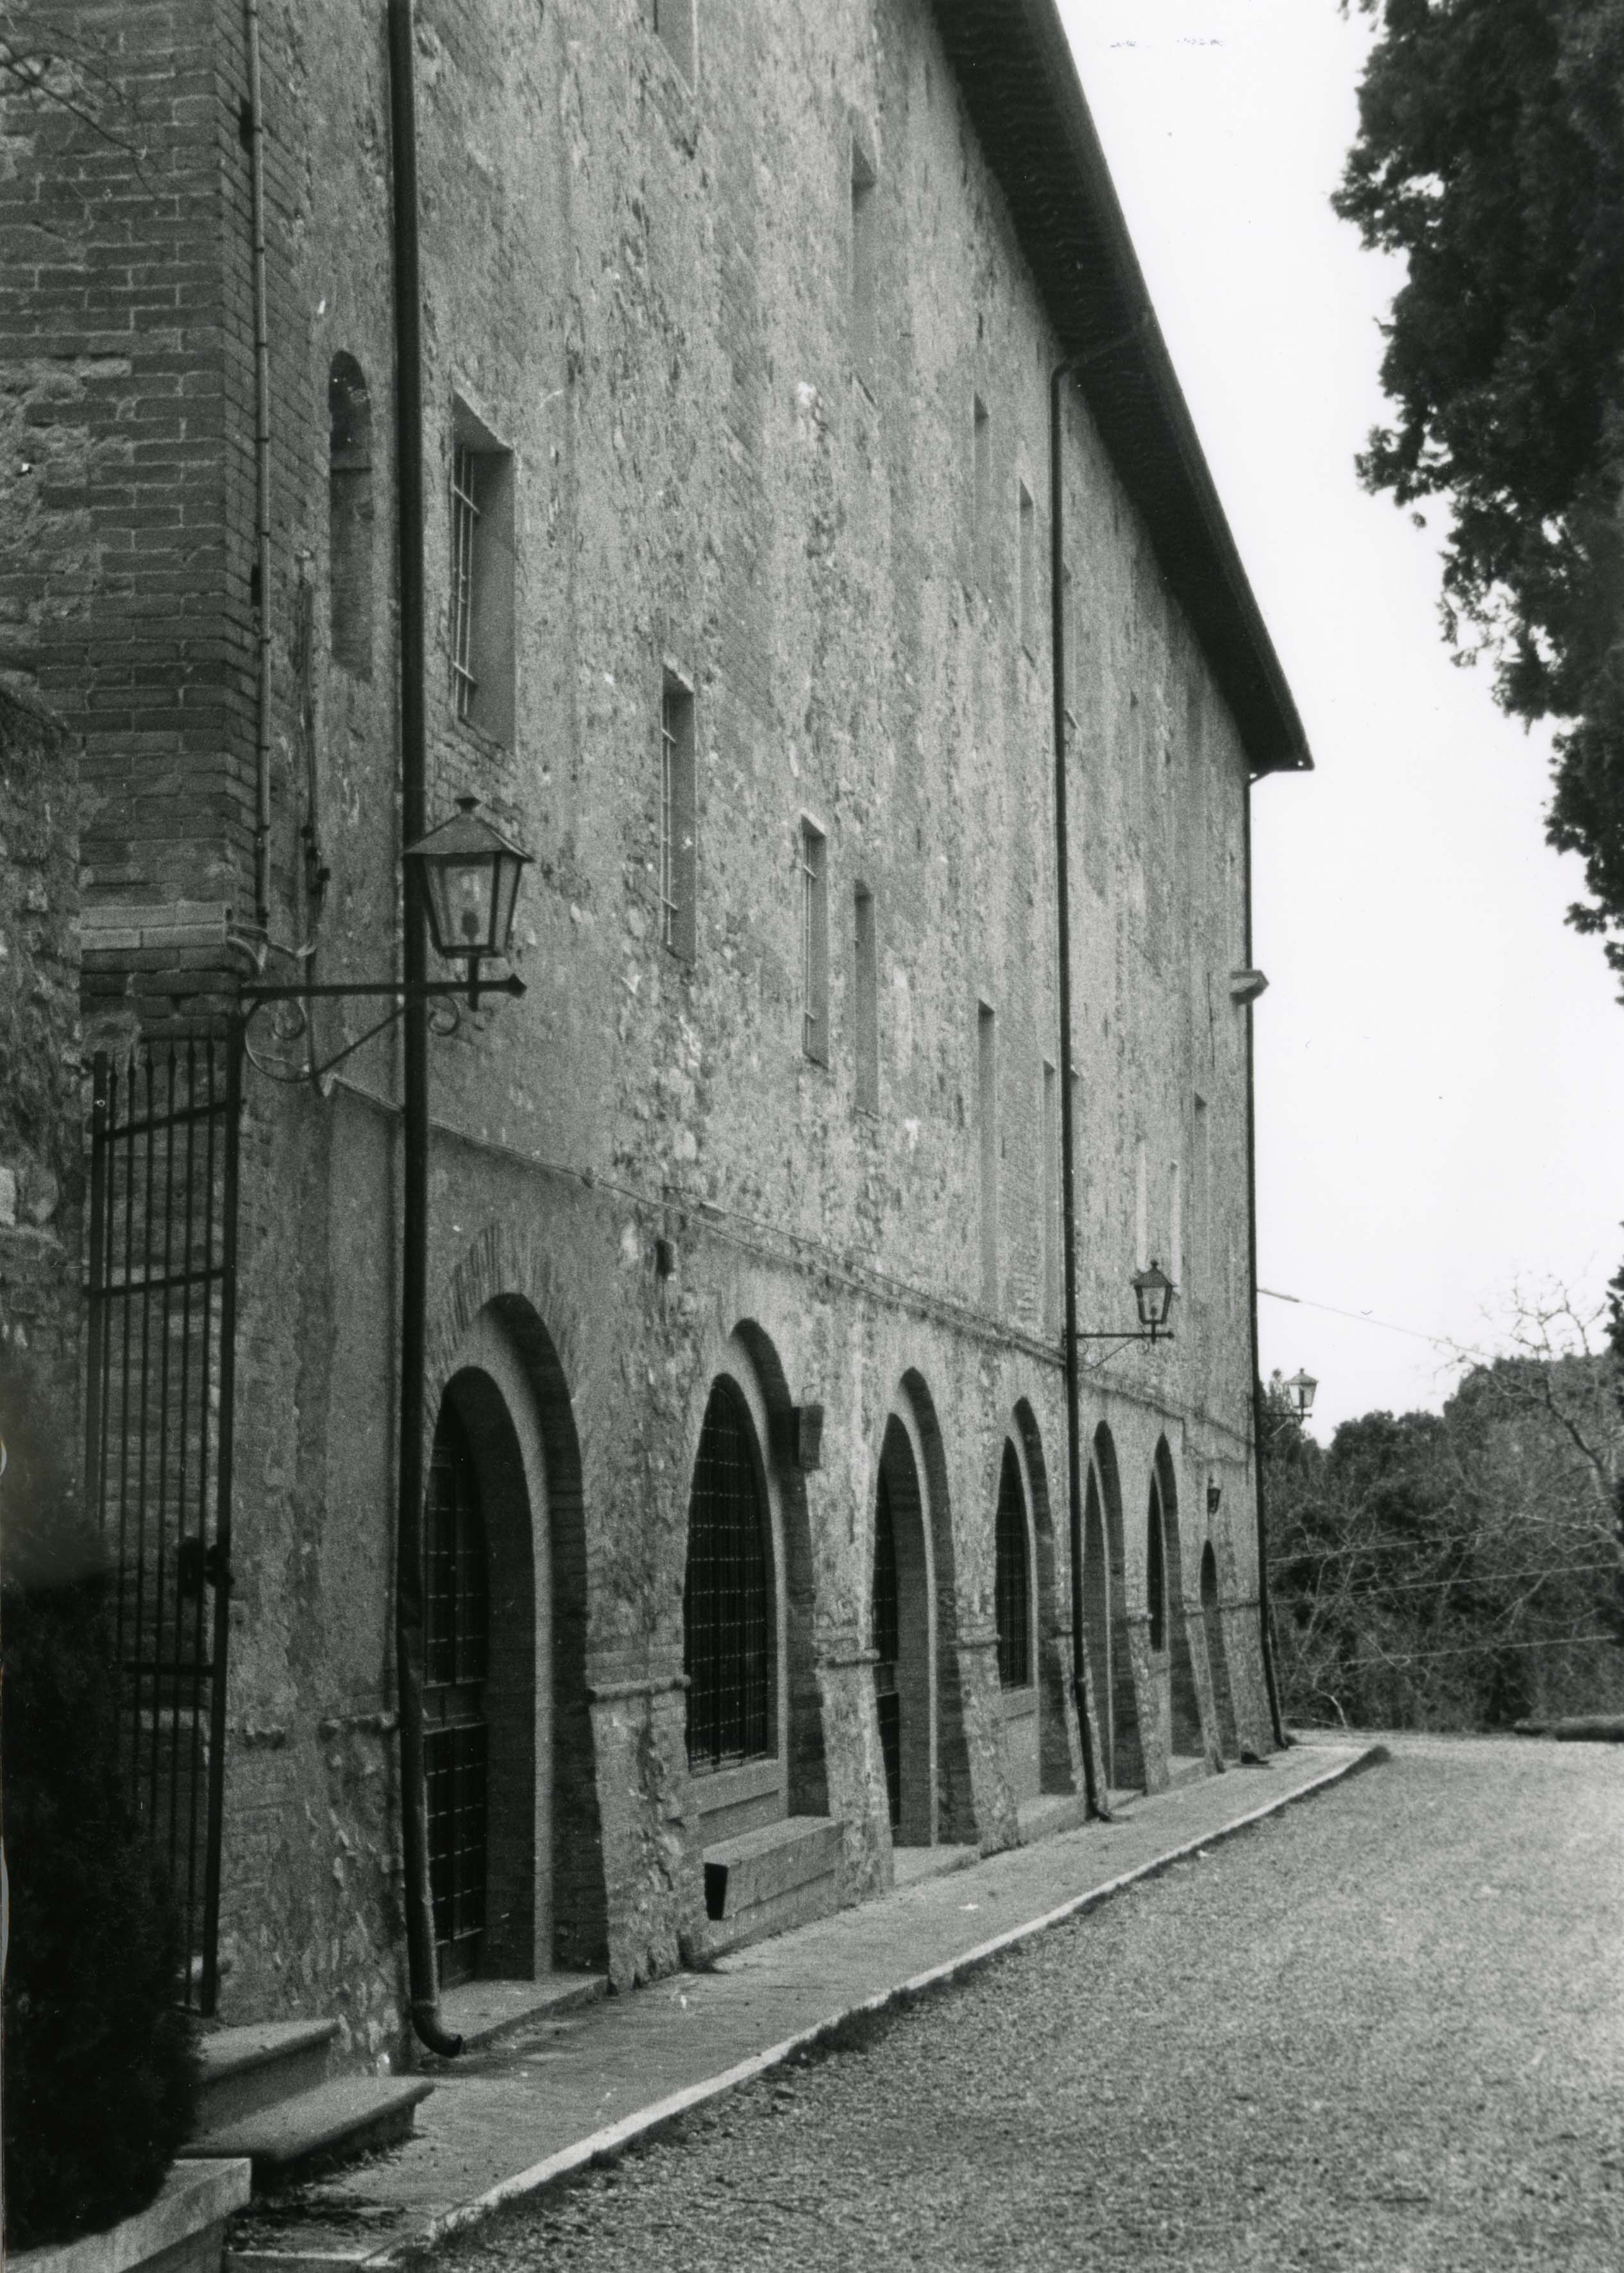 Convento dell'Osservanza - Chiostro dell'Infermeria (convento) - Siena (SI) 